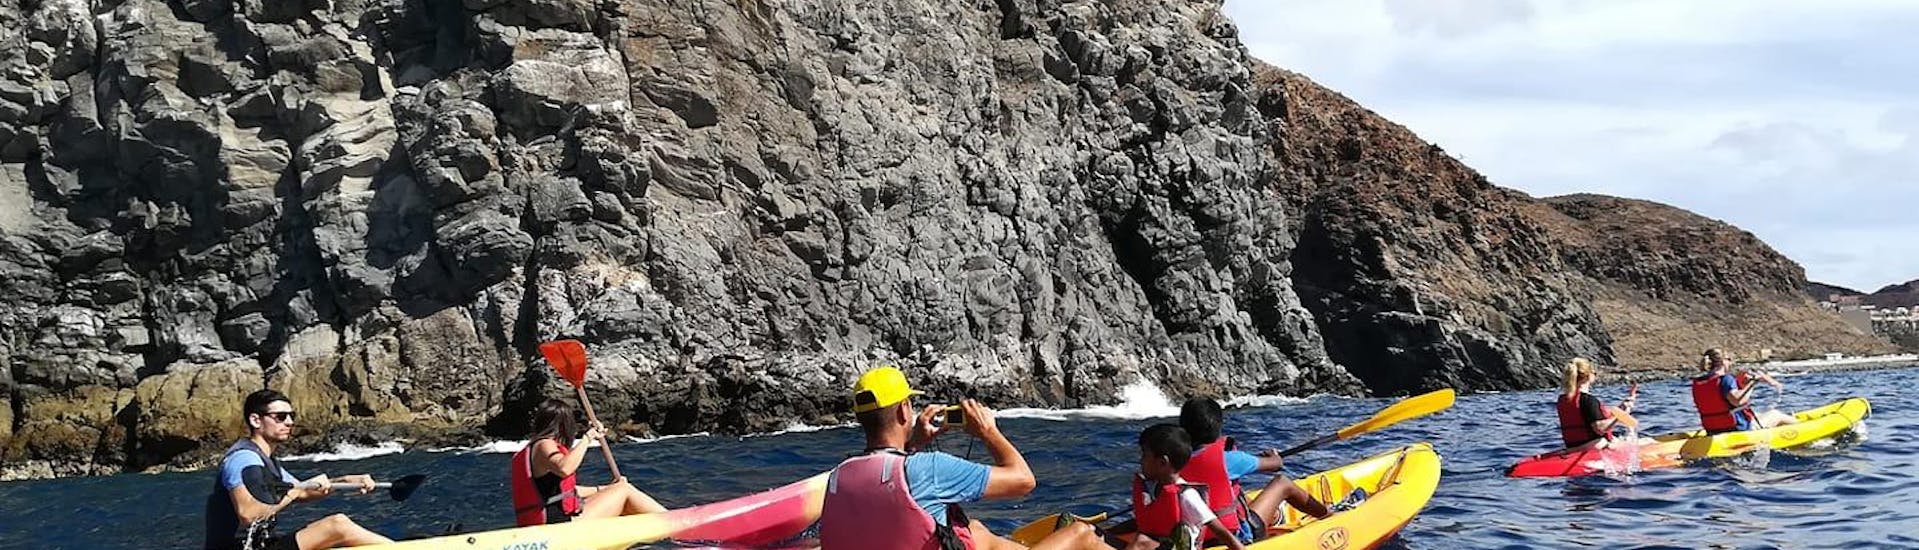 Una excursión en kayak de mar desde Los Cristianos va a un acantilado con Kayak Academy Tenerife.